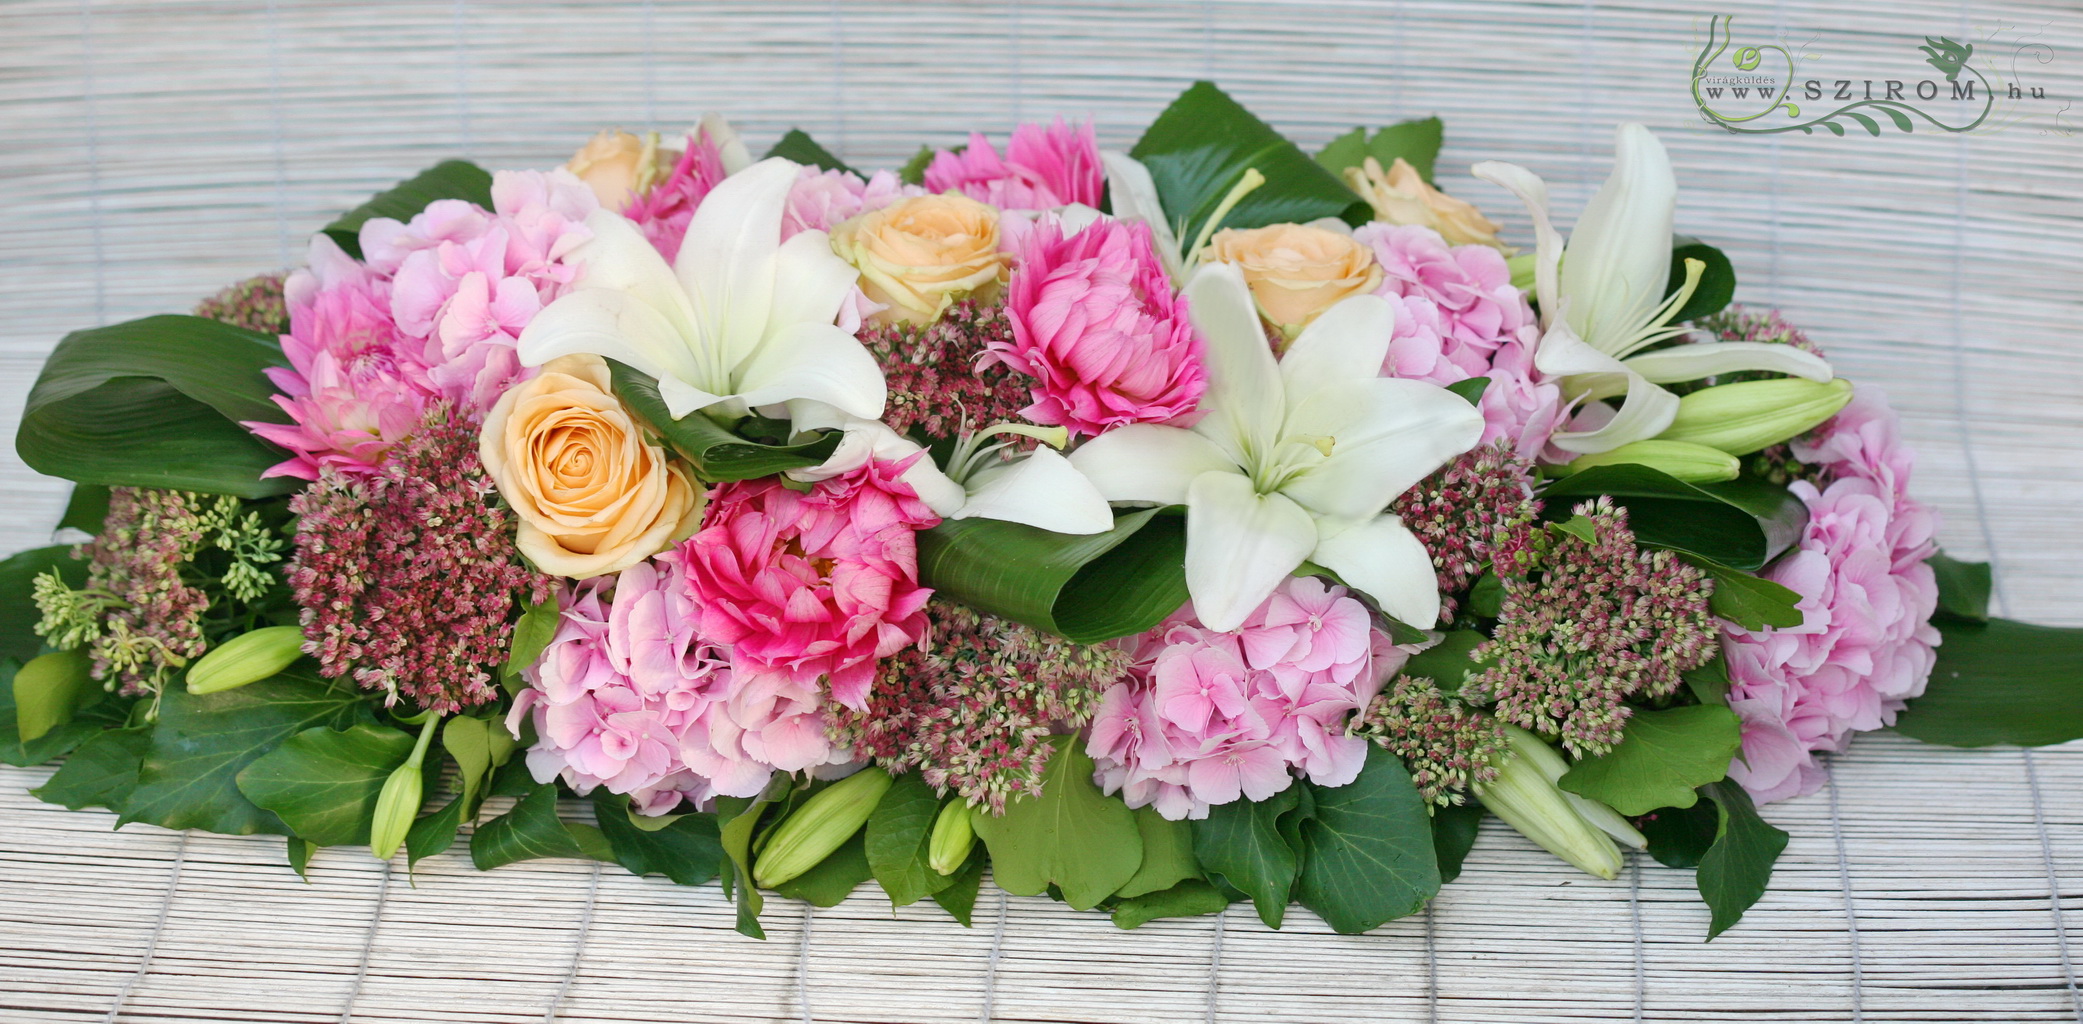 Főasztaldísz (hortenzia, rózsa, dália, sedum, rózsaszín, fehér, barack), esküvő